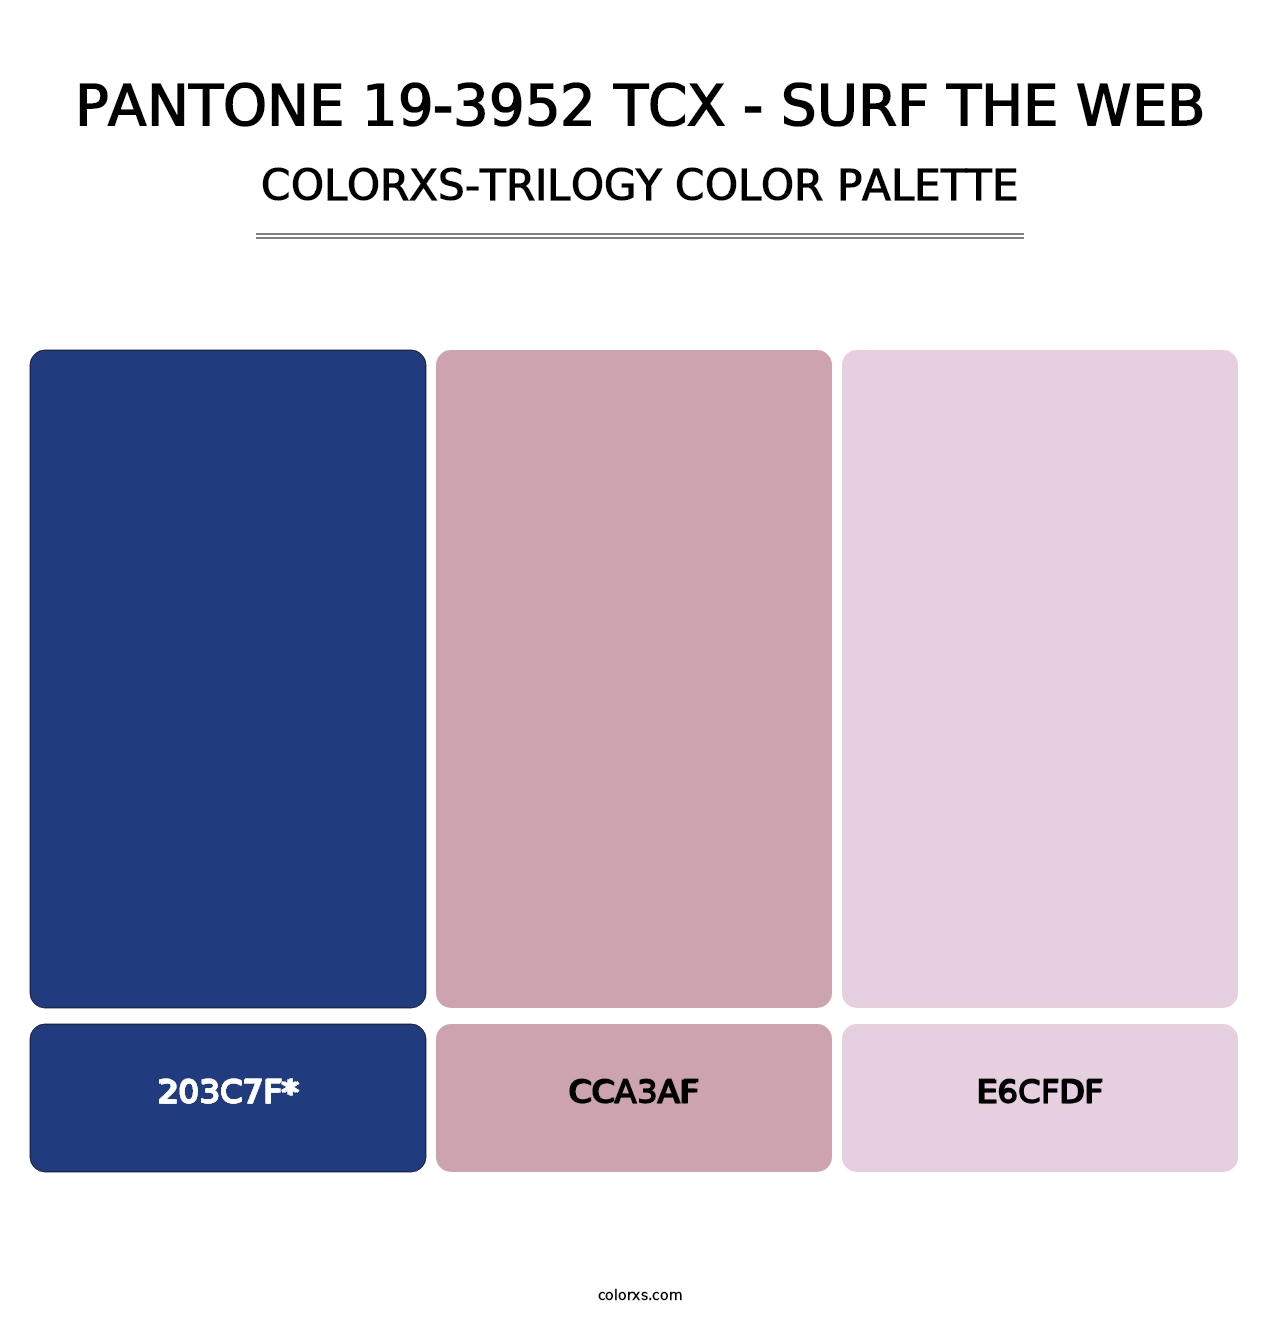 PANTONE 19-3952 TCX - Surf the Web - Colorxs Trilogy Palette